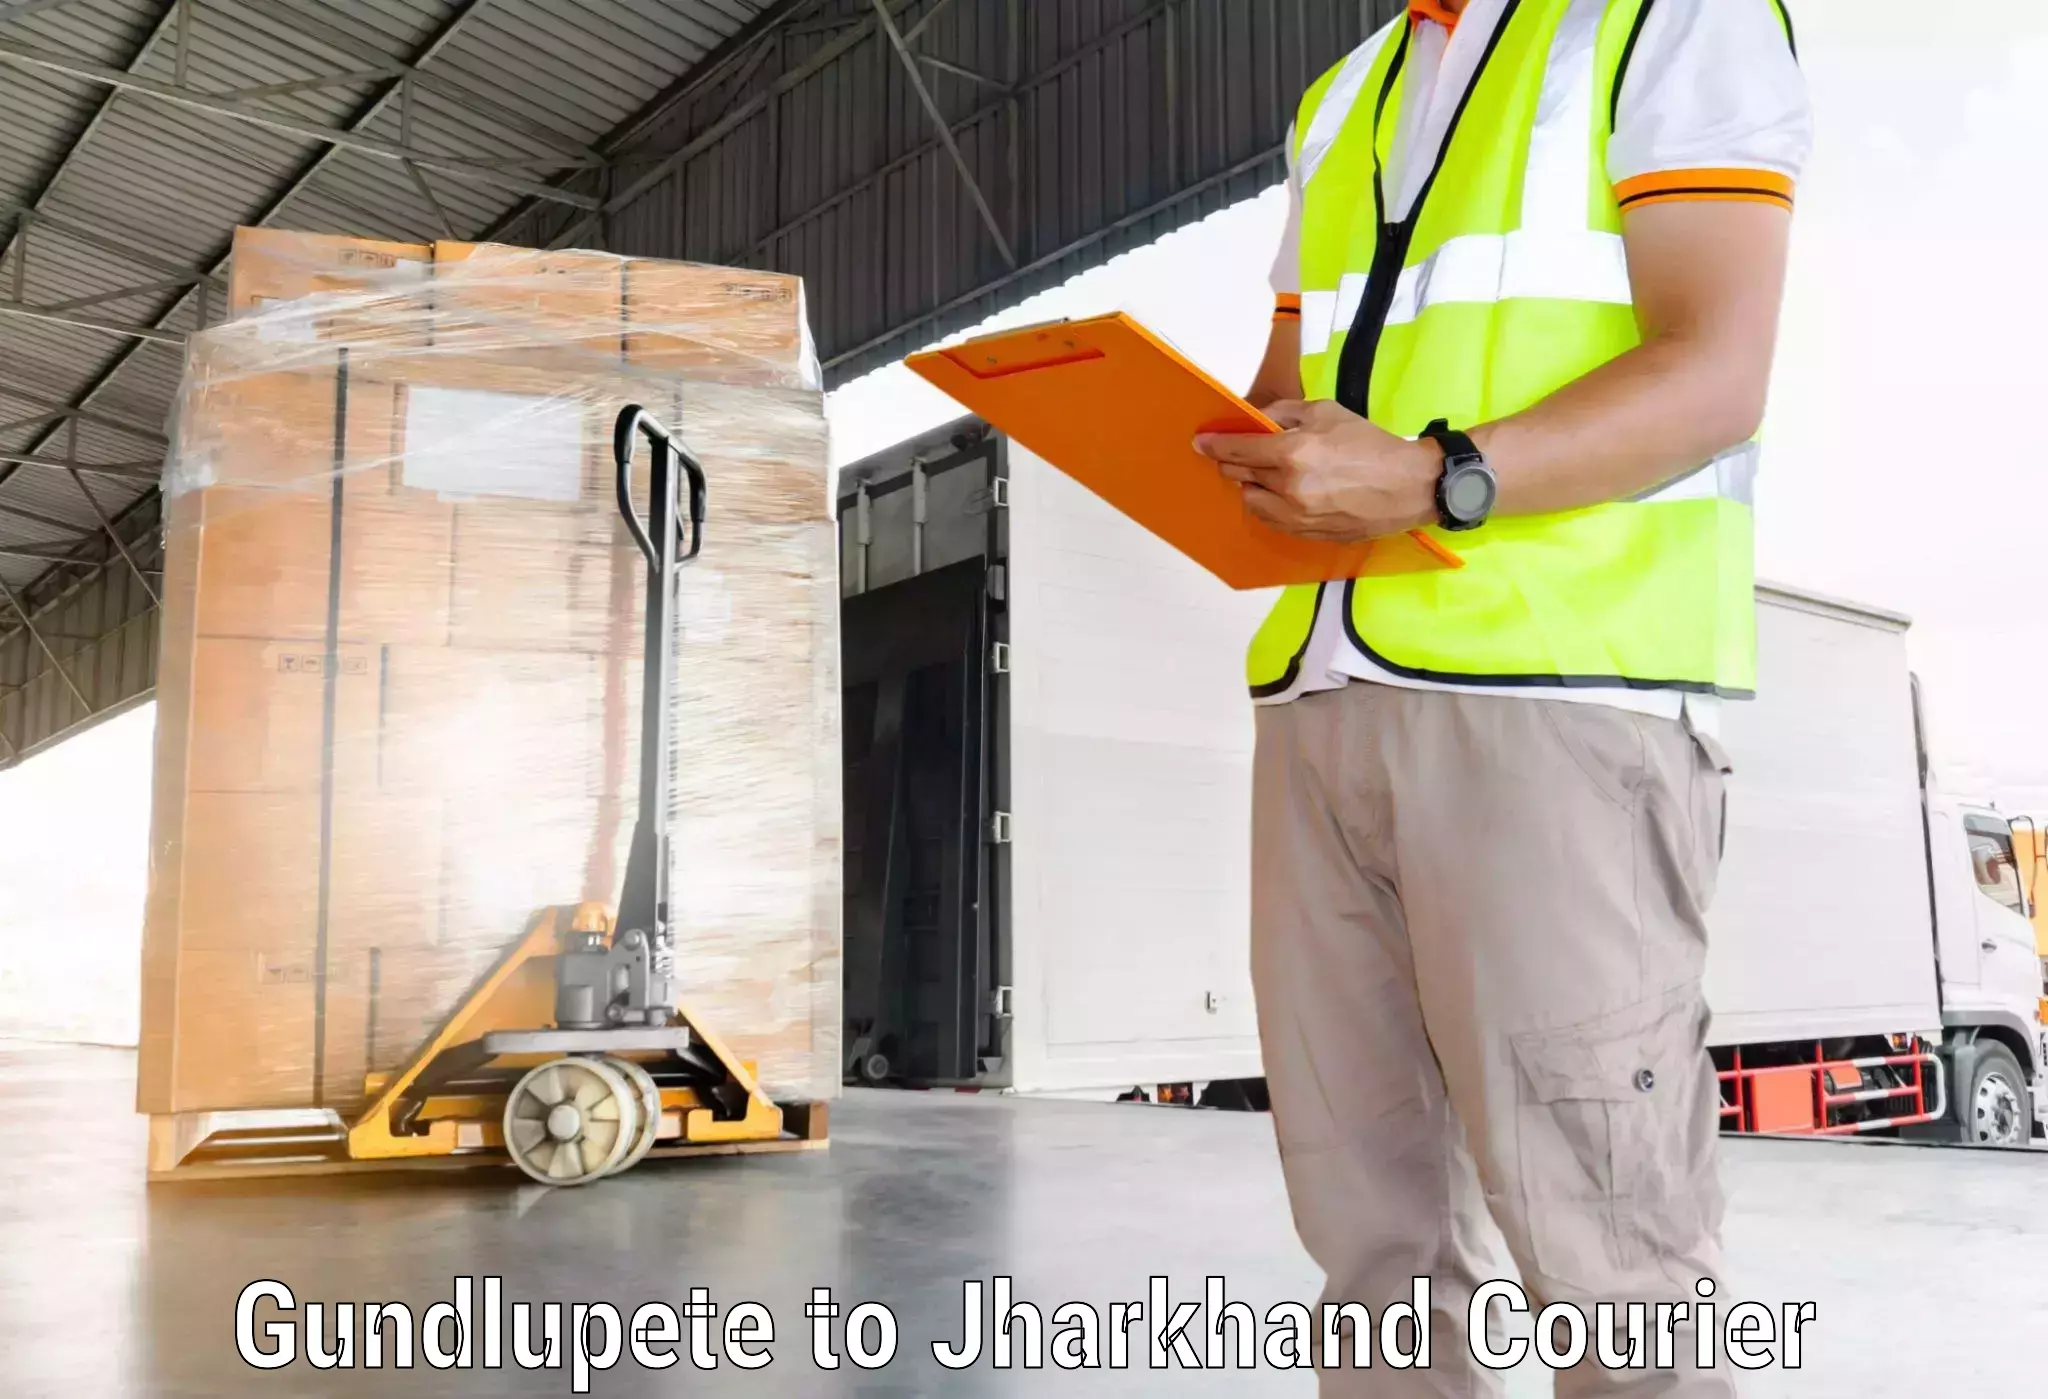 Global logistics network Gundlupete to Koderma